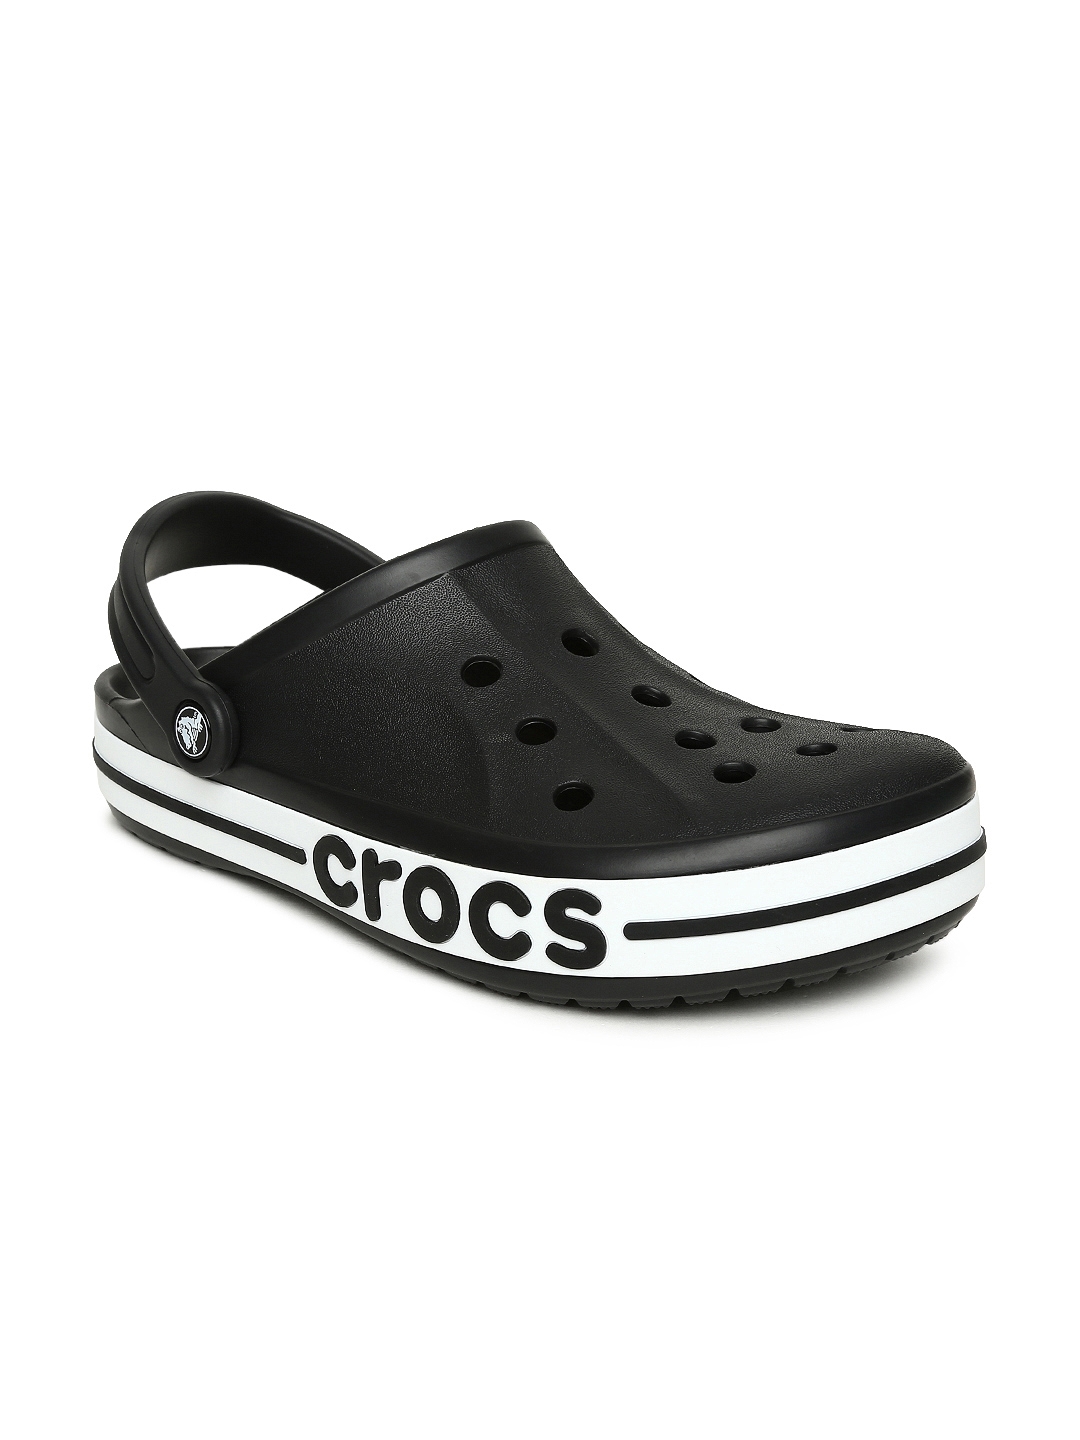 Crocs Slippers - Nexotin.com-saigonsouth.com.vn